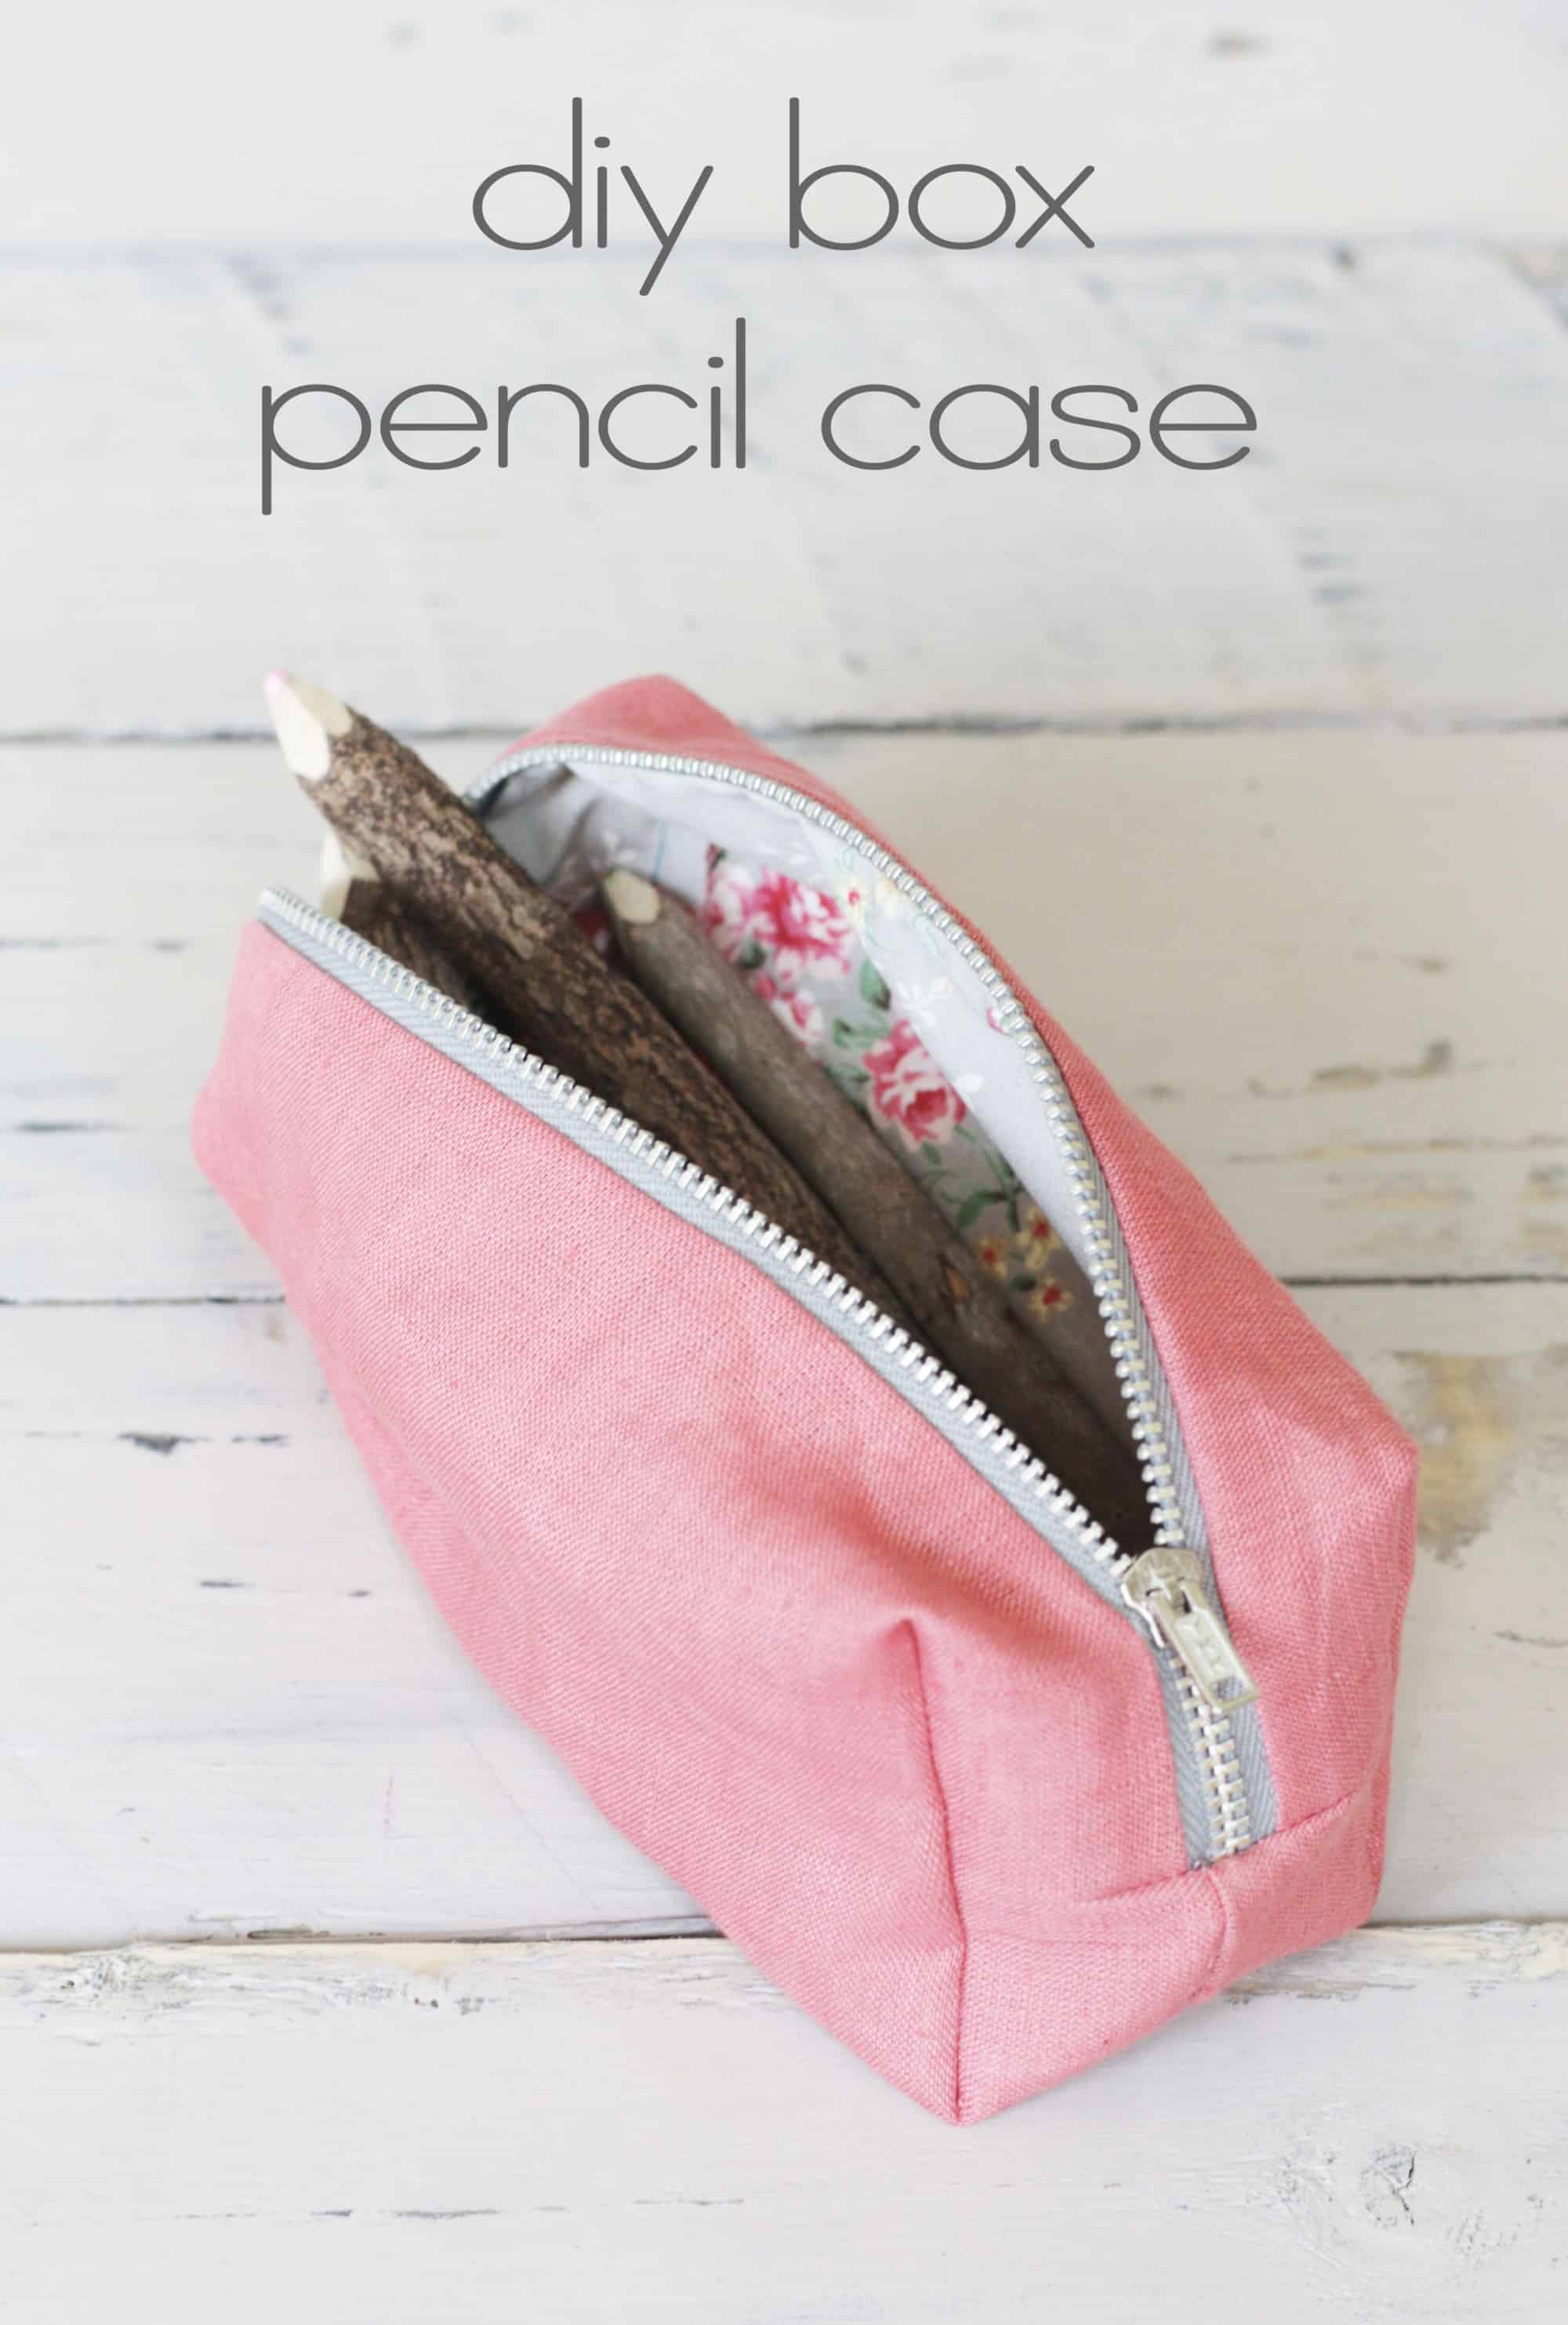 Boxy pencil case